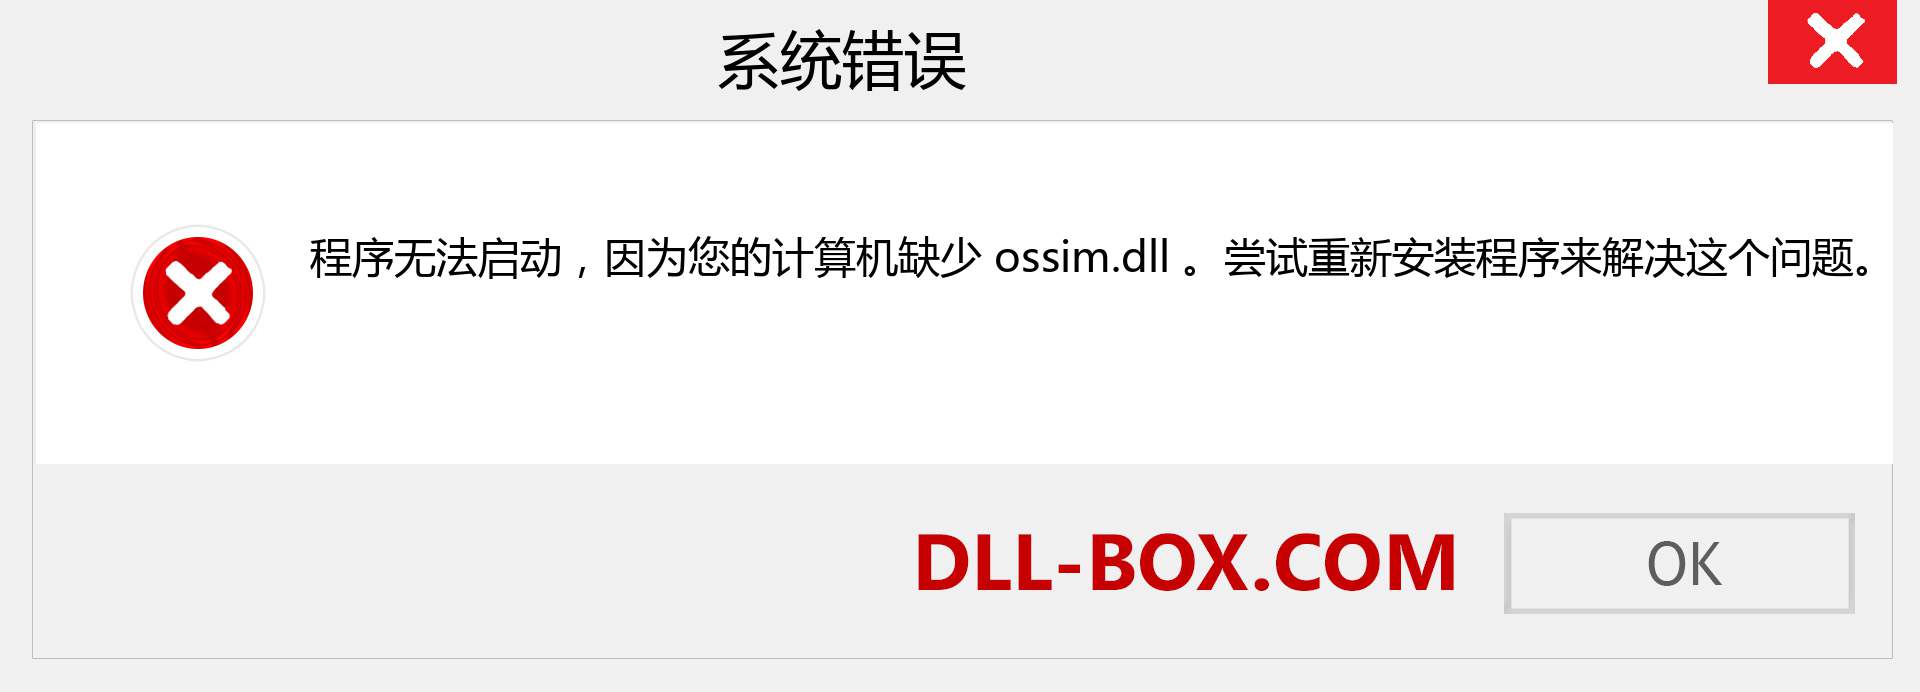 ossim.dll 文件丢失？。 适用于 Windows 7、8、10 的下载 - 修复 Windows、照片、图像上的 ossim dll 丢失错误